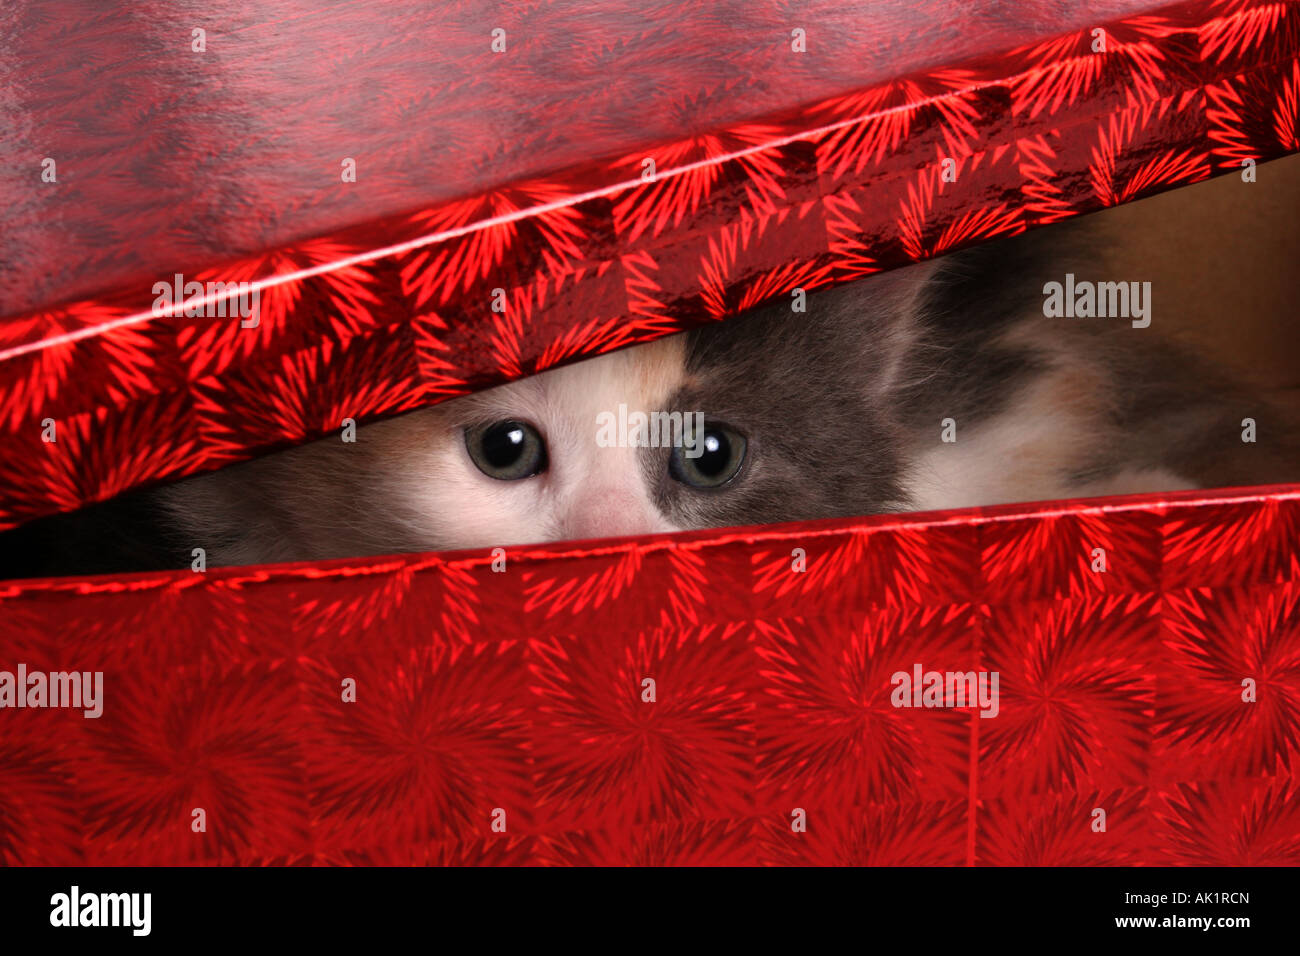 Un Calico gattino circa 6 settimane di età all'interno di un rosso regalo di Natale dato come un regalo a un giovane bambino Foto Stock